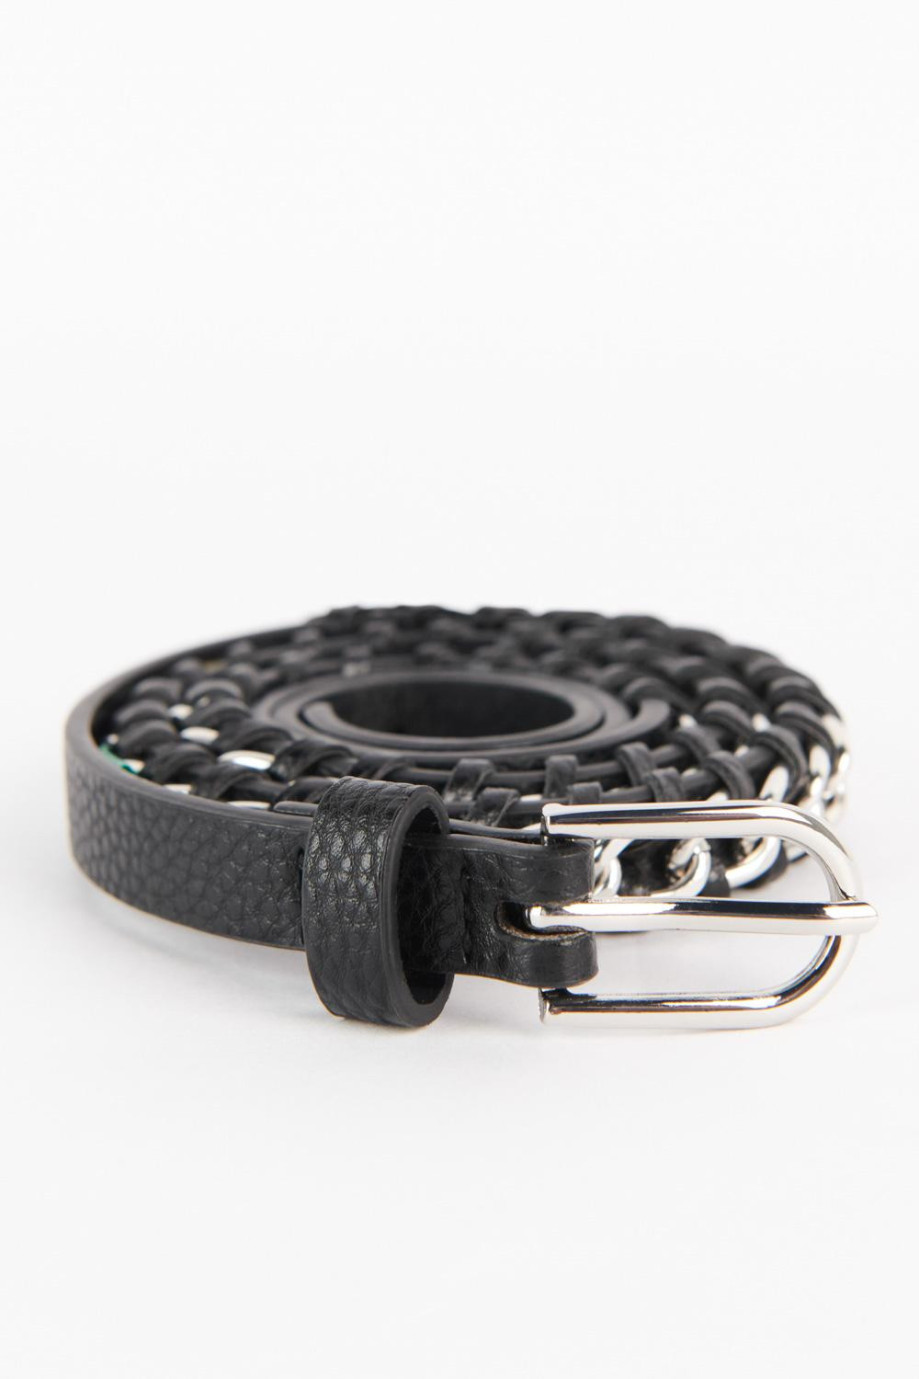 Cinturón negro con hebilla y detalles metálicos decorativos